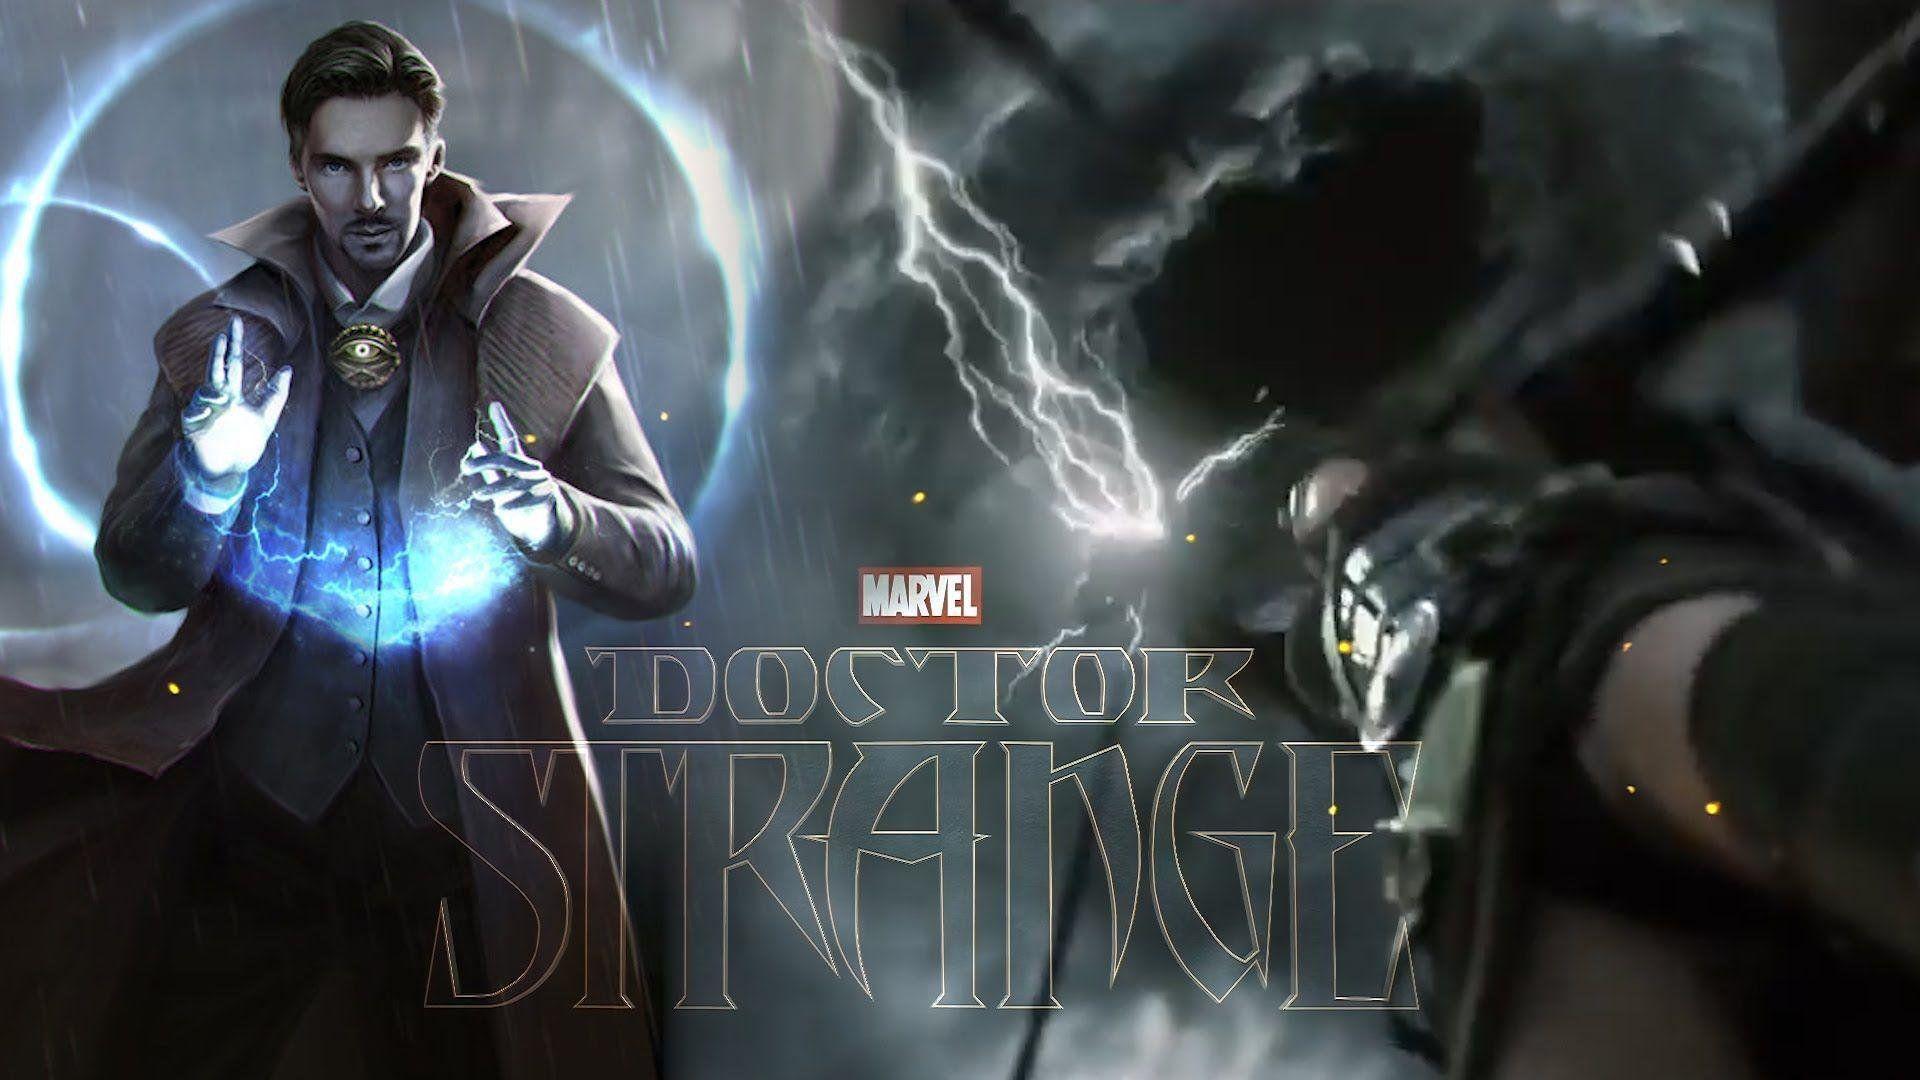 Marvel Doctor Strange Wallpaper for Phone and HD Desktop Background